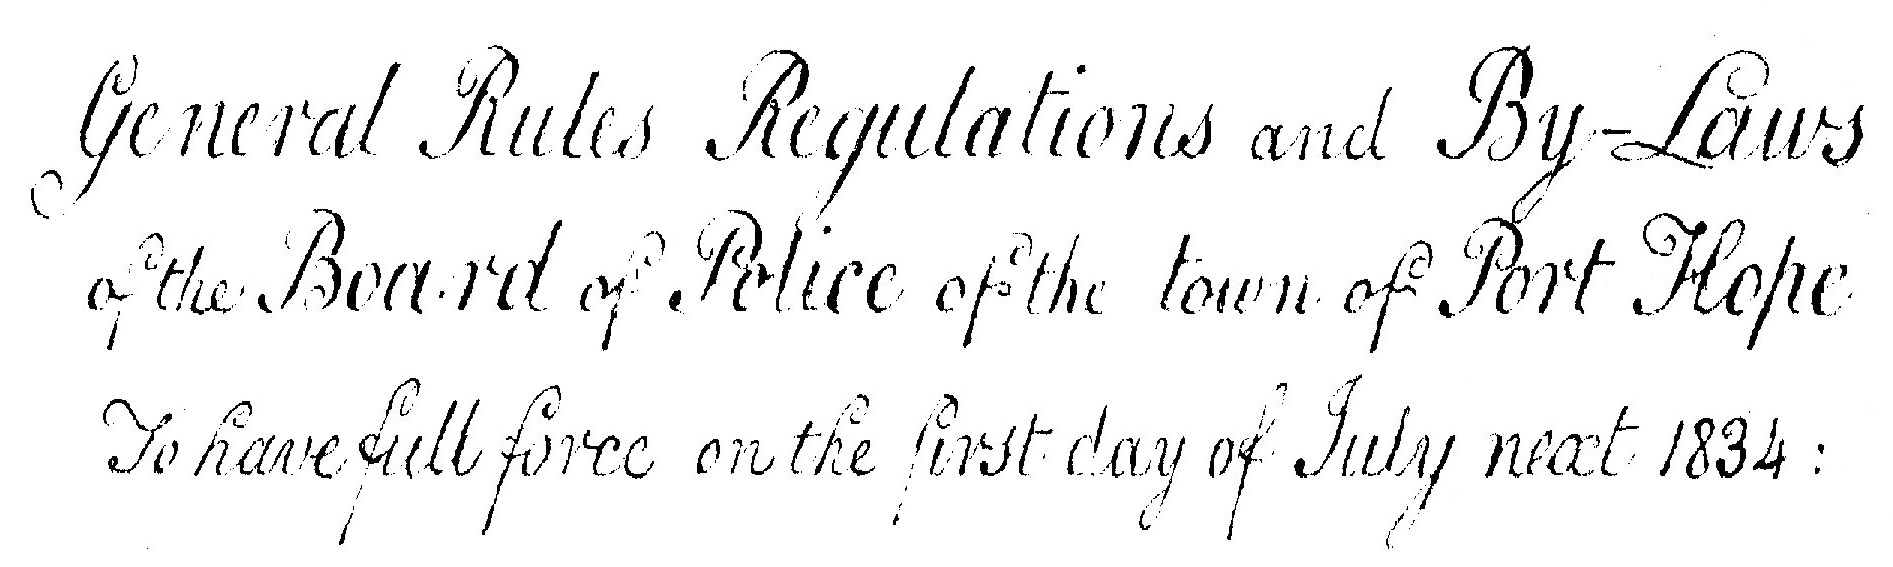 Original 1834 document heading